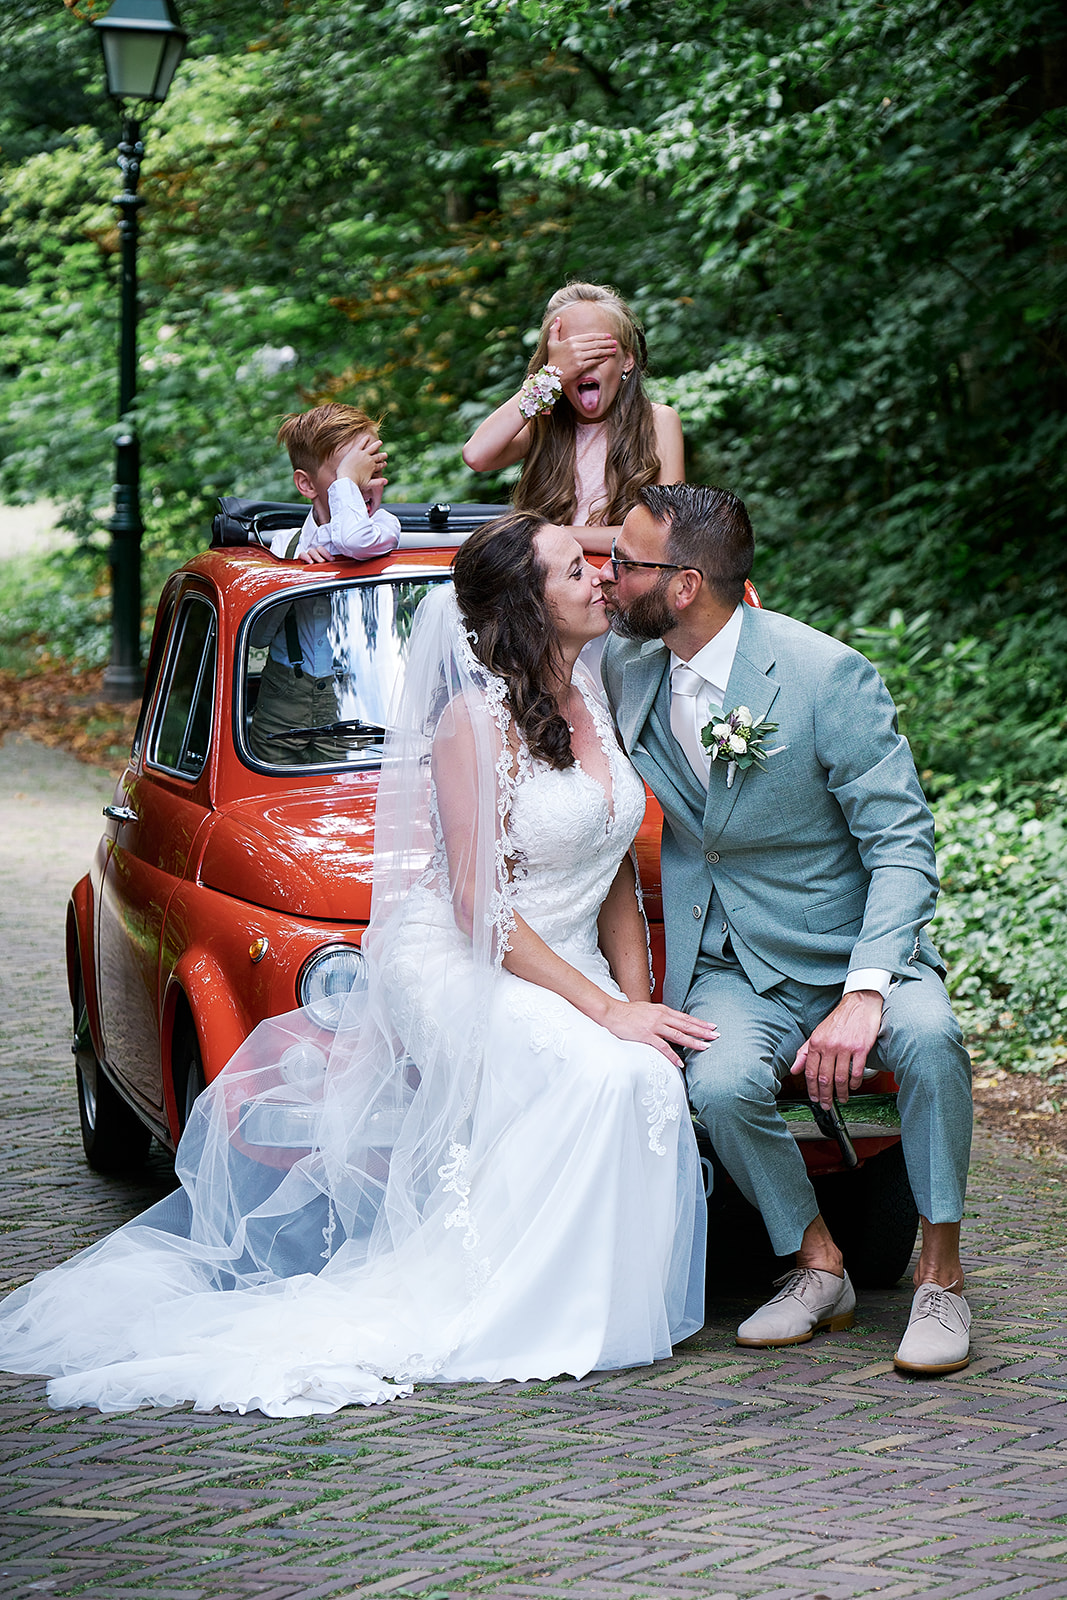 Droombruiloft van Romana & Sander - bruidsfotografie Stefan Segers